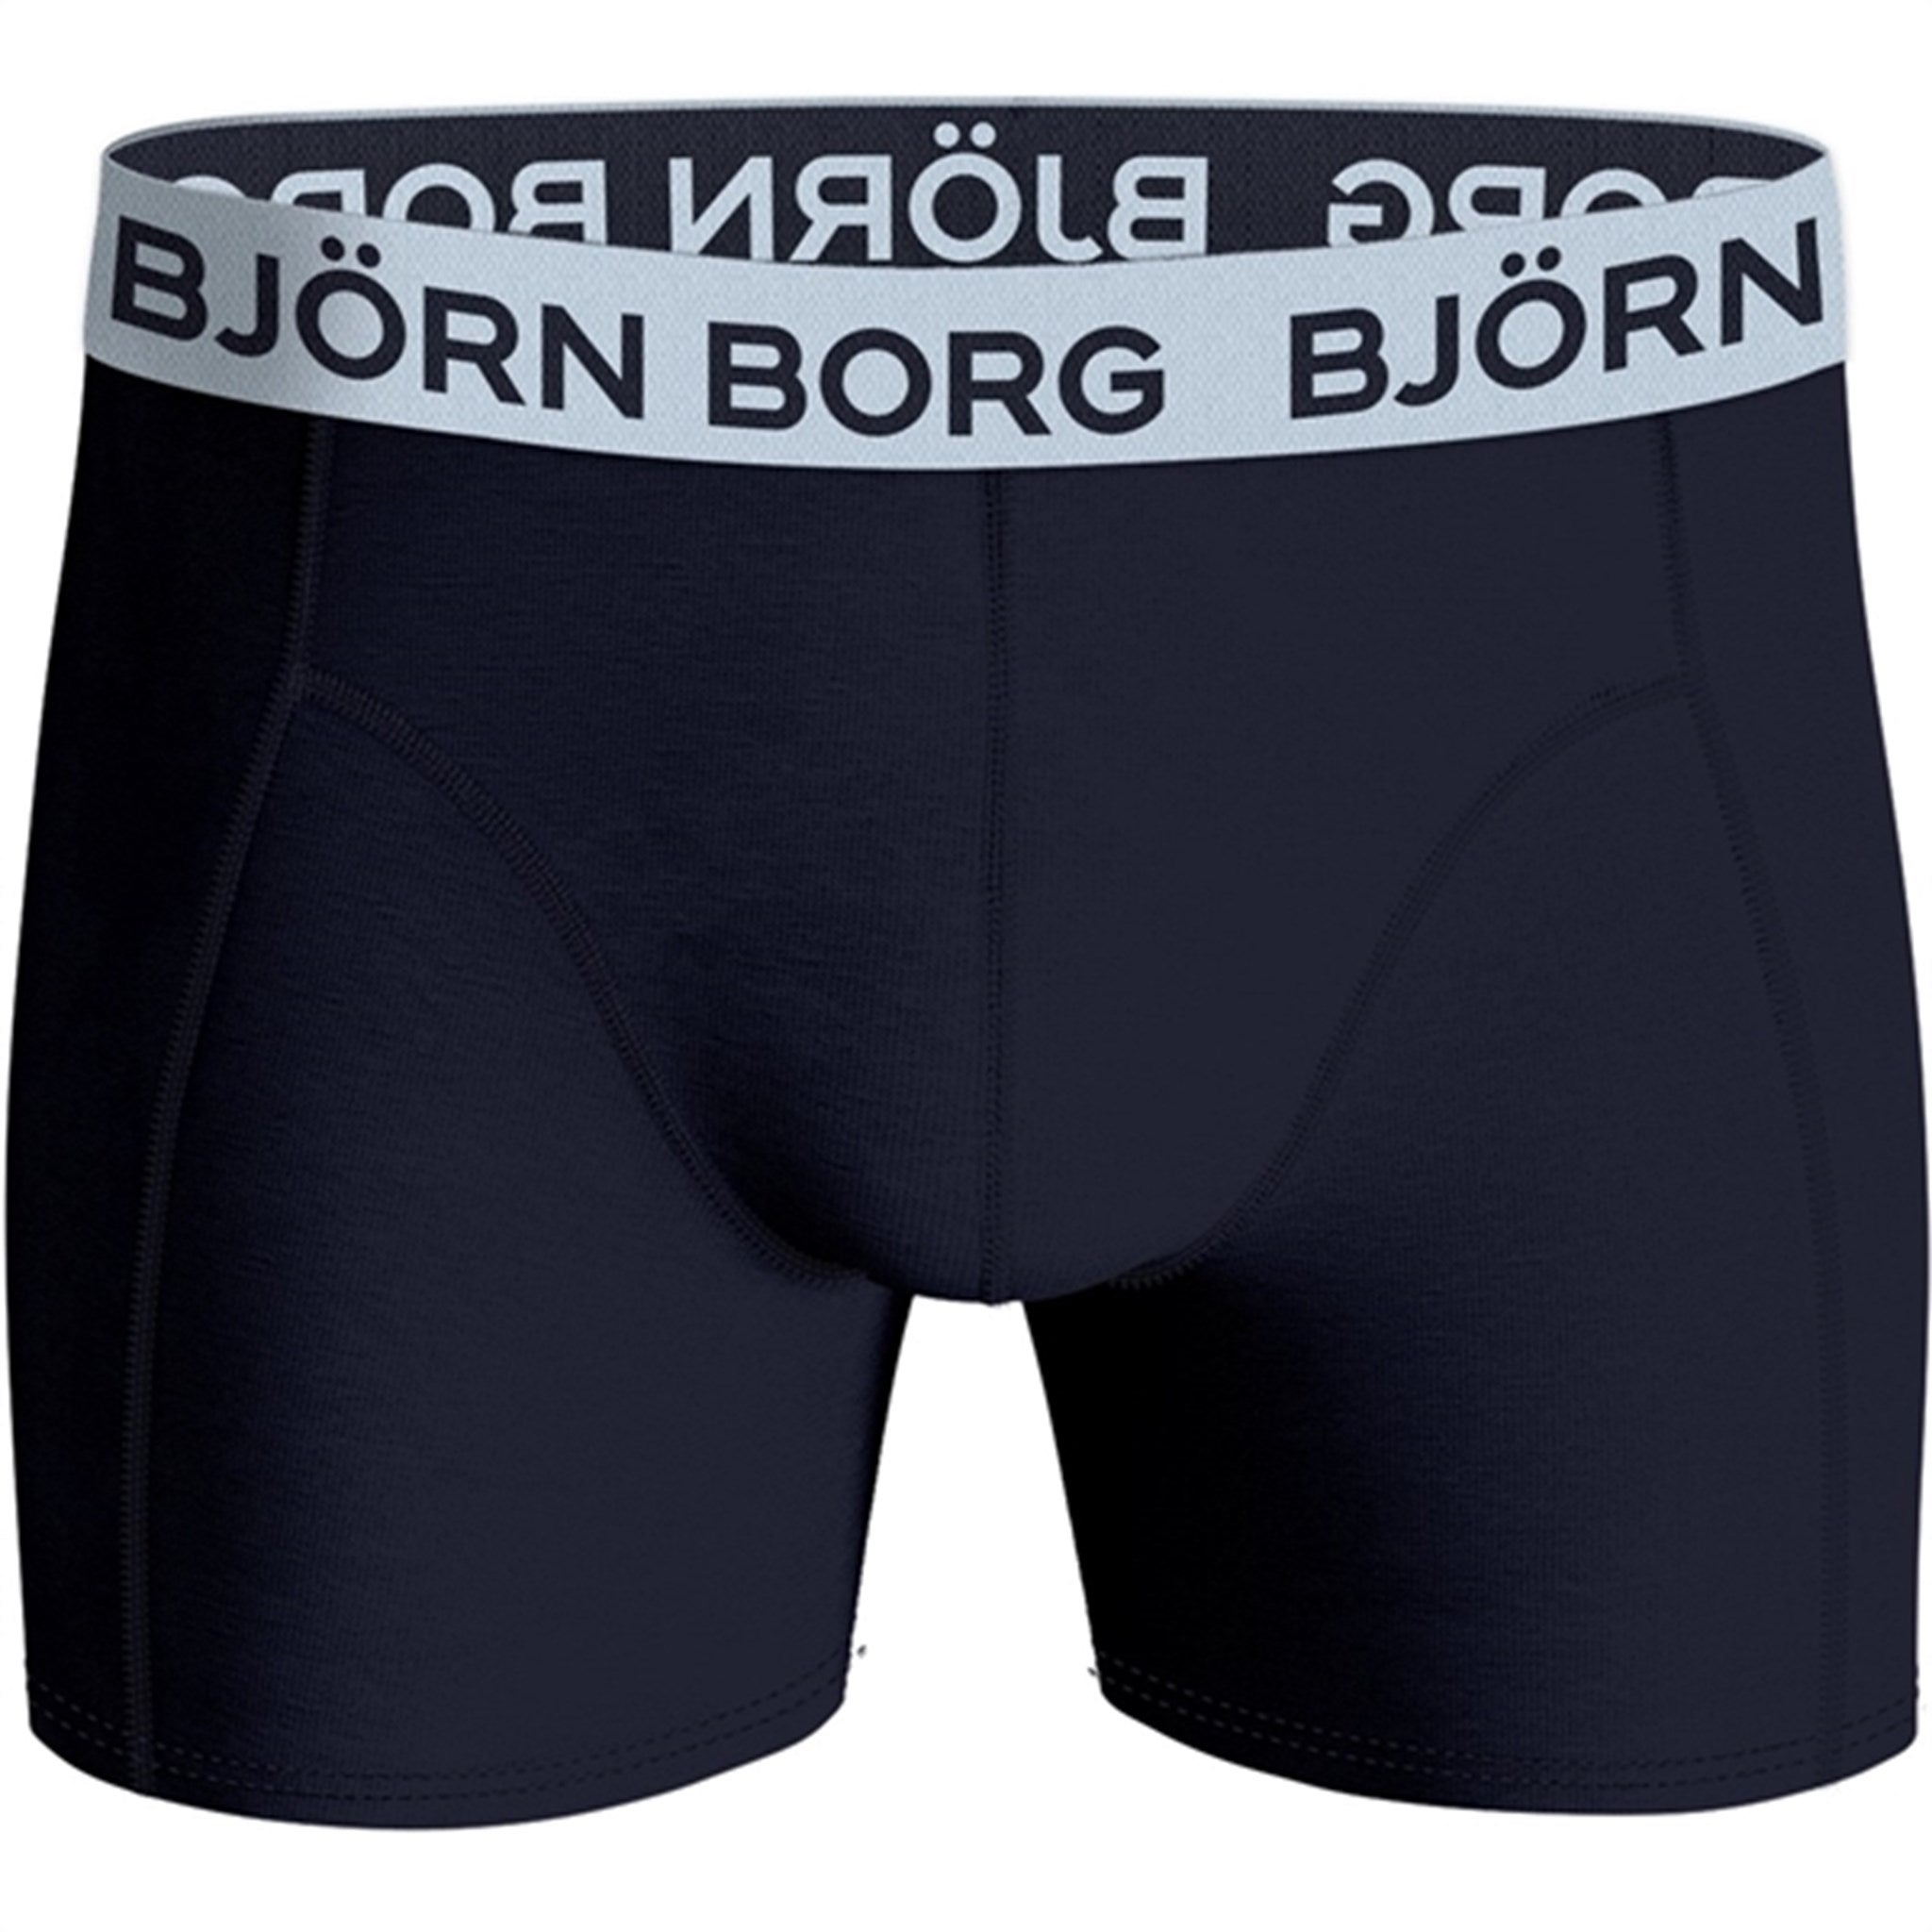 Björn Borg Core Boxershorts 3-pack Multi 2